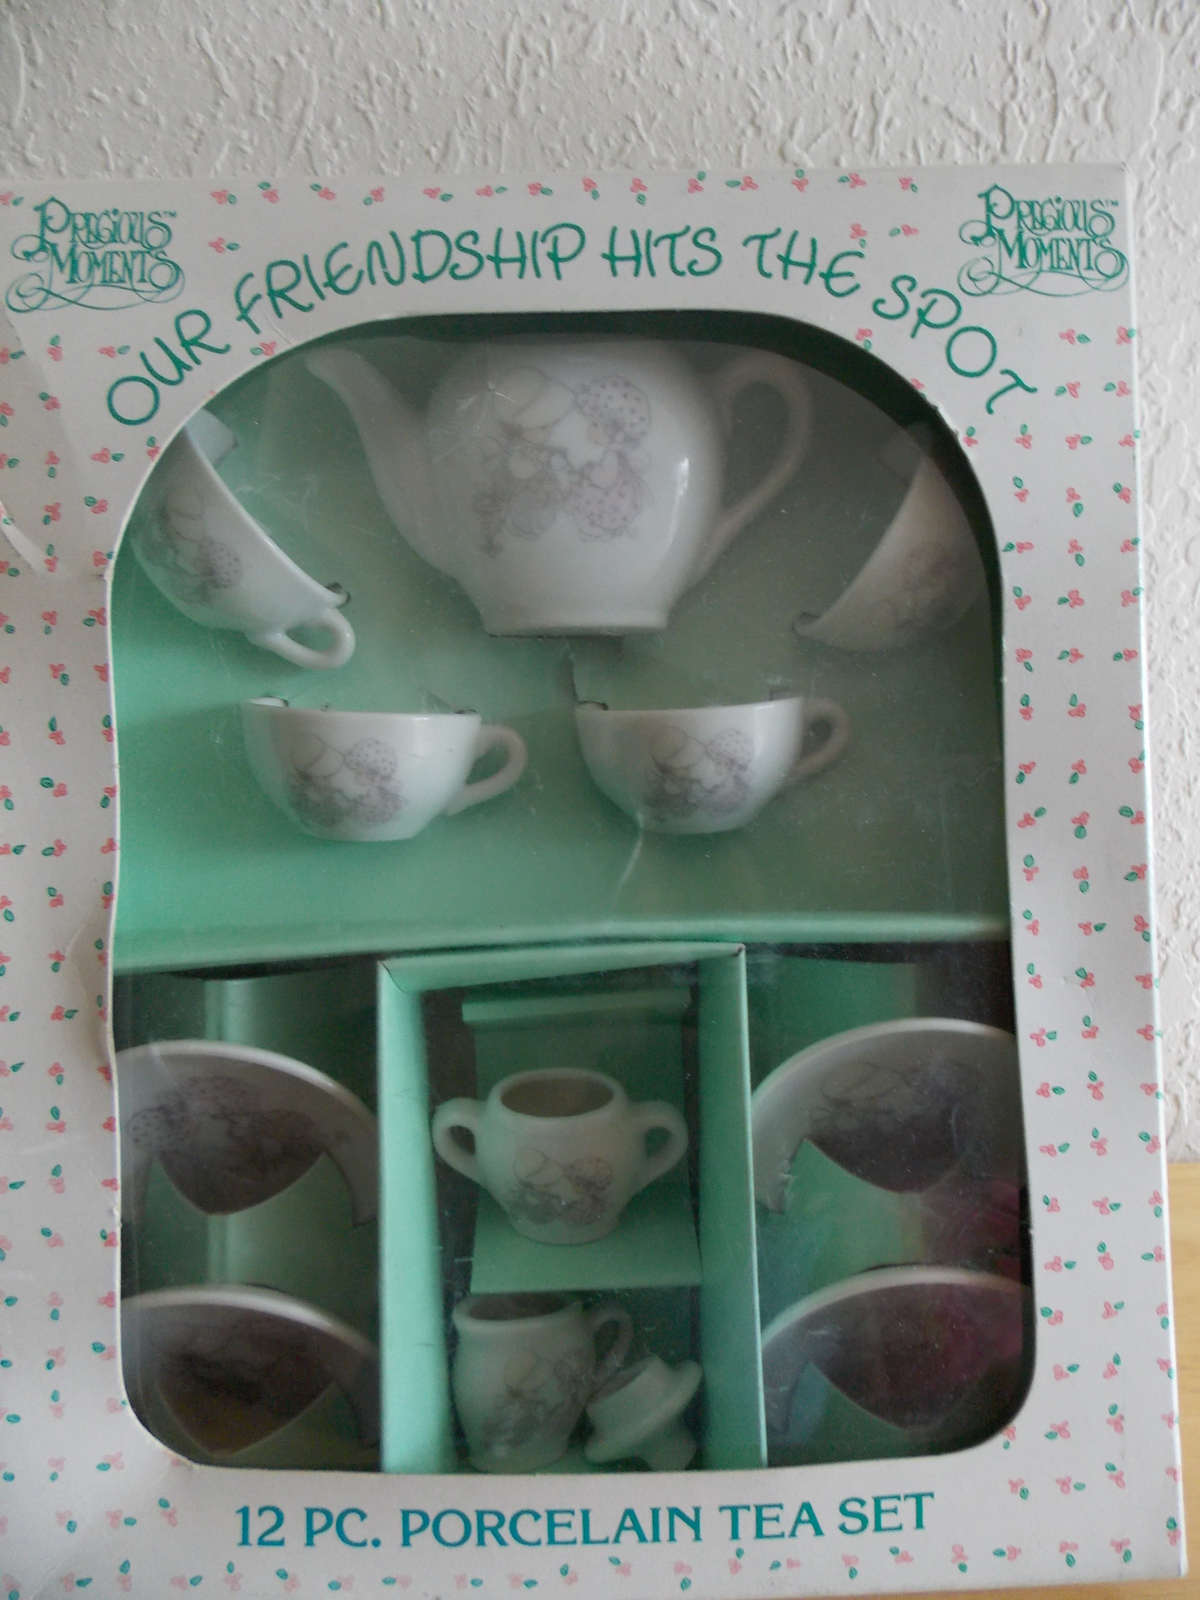 1985 Precious Moments “Our Friendship Hits The Spot” 12pc. Porcelain Tea Set  - $35.00